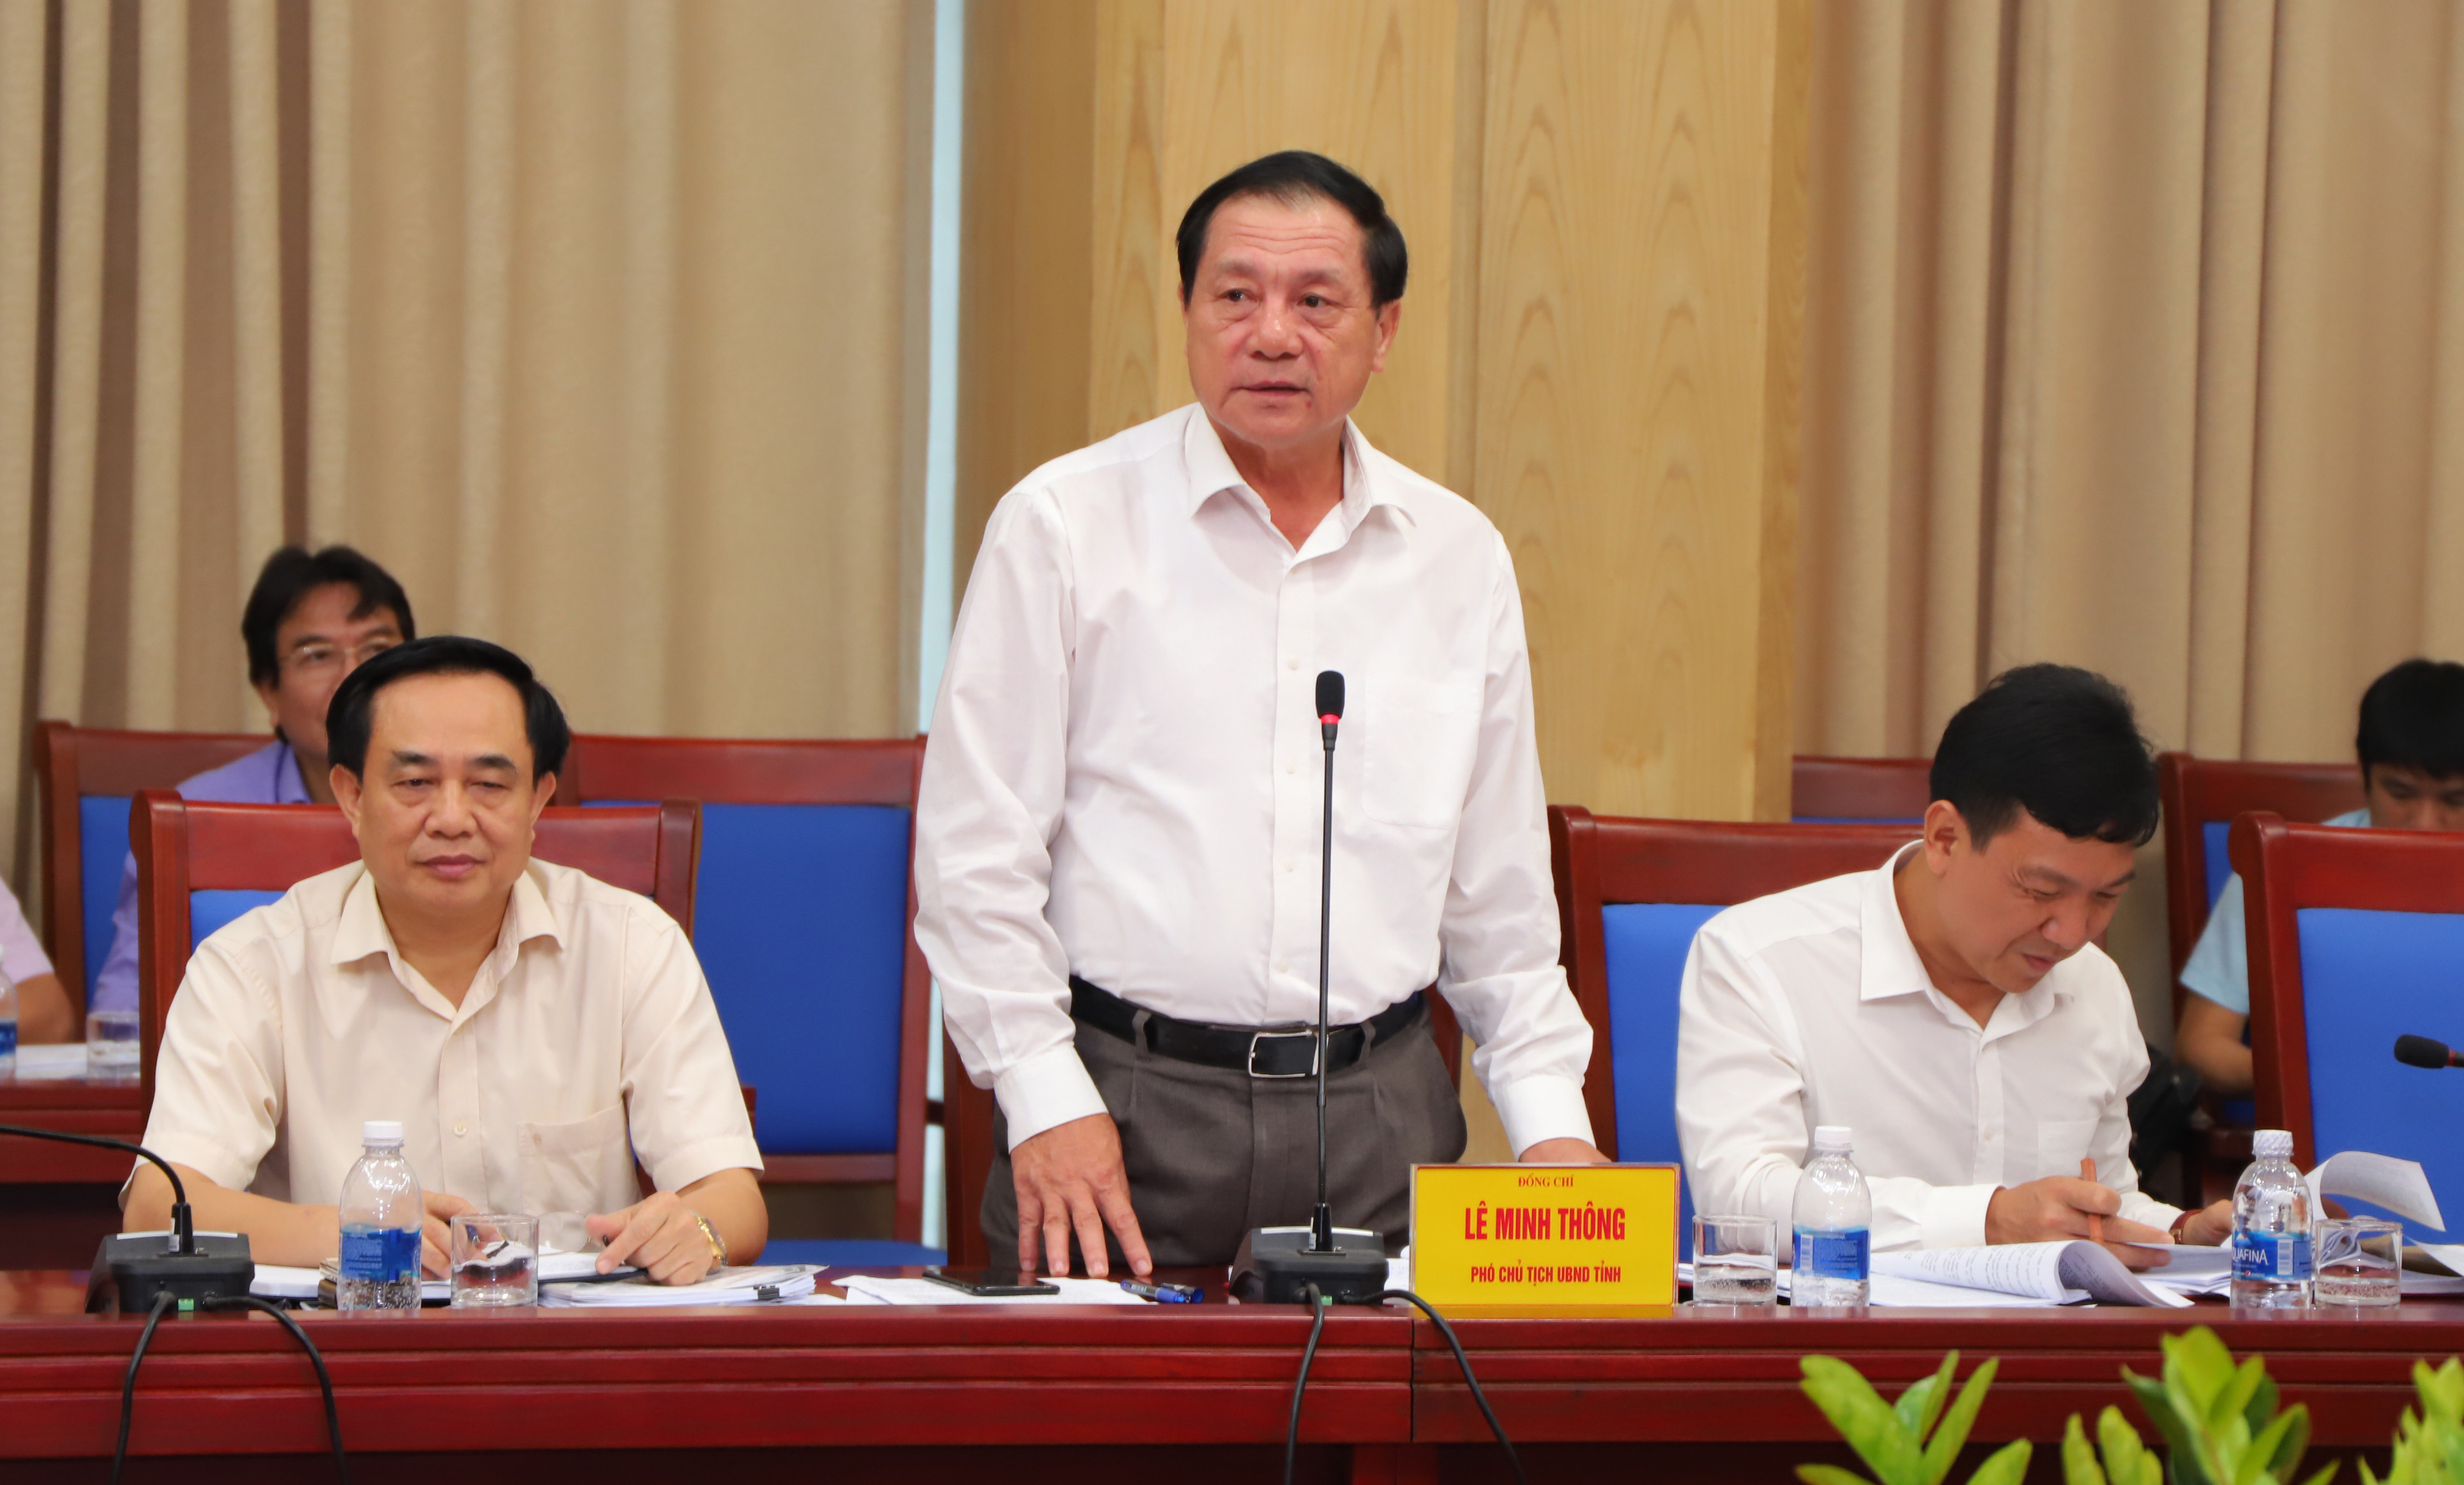 Phó Chủ tịch UBND tỉnh Lê Minh Thông phát biểu tại cuộc làm việc. Ảnh: Thành Duy